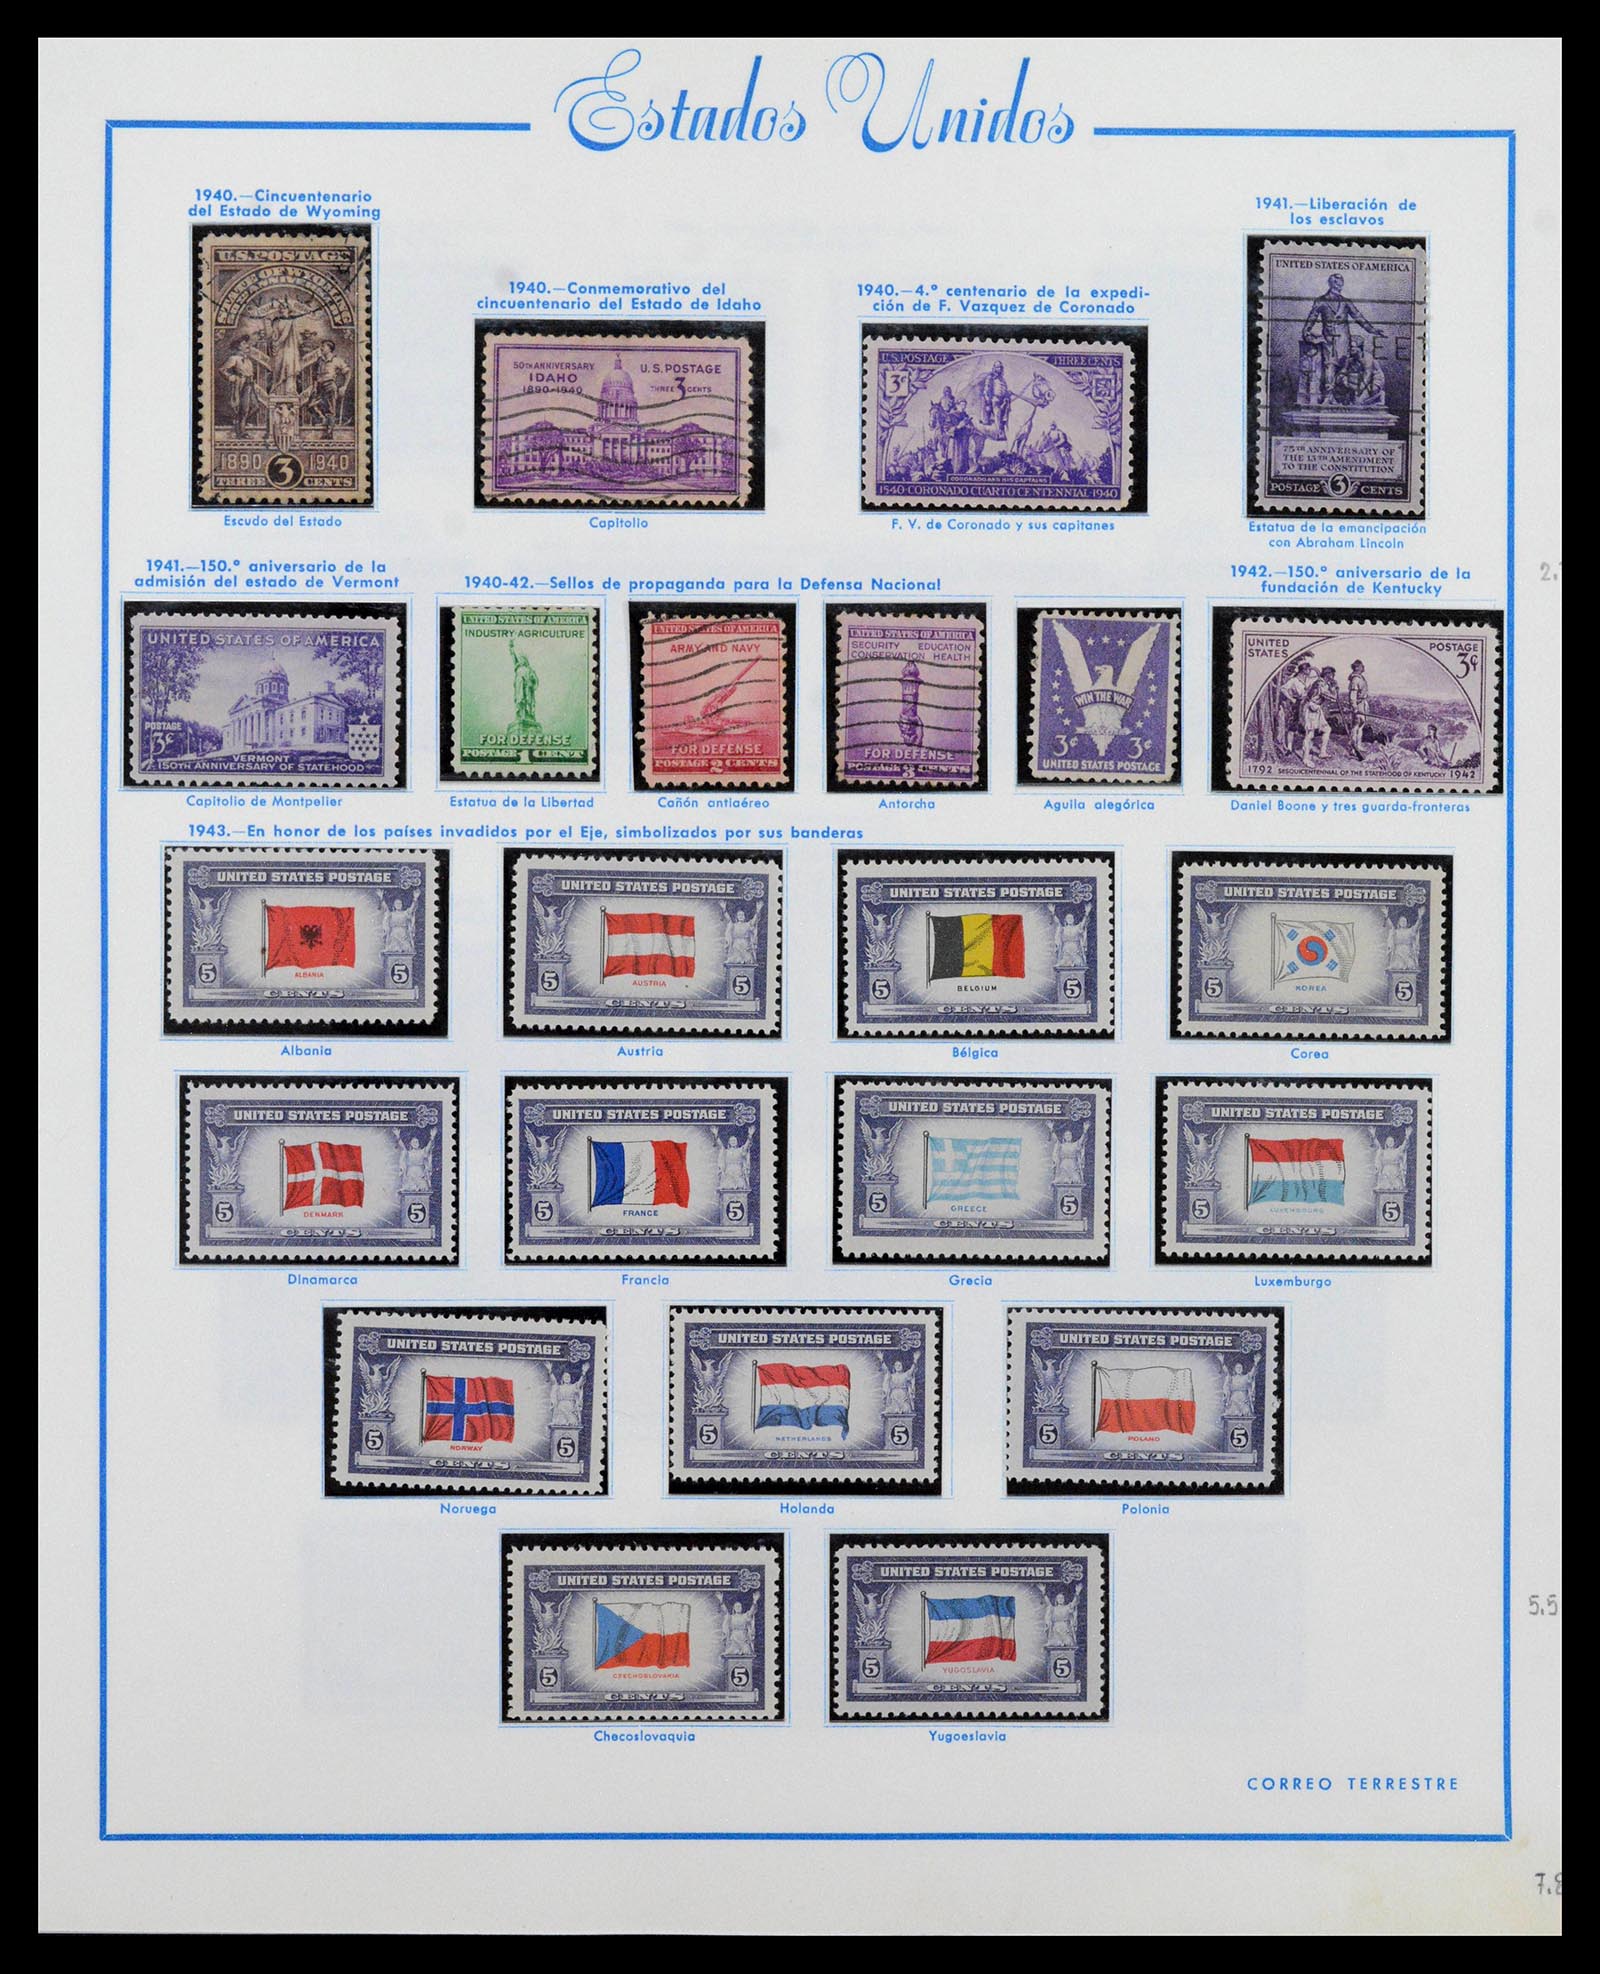 39190 0024 - Stamp collection 39190 USA 1851-1975.